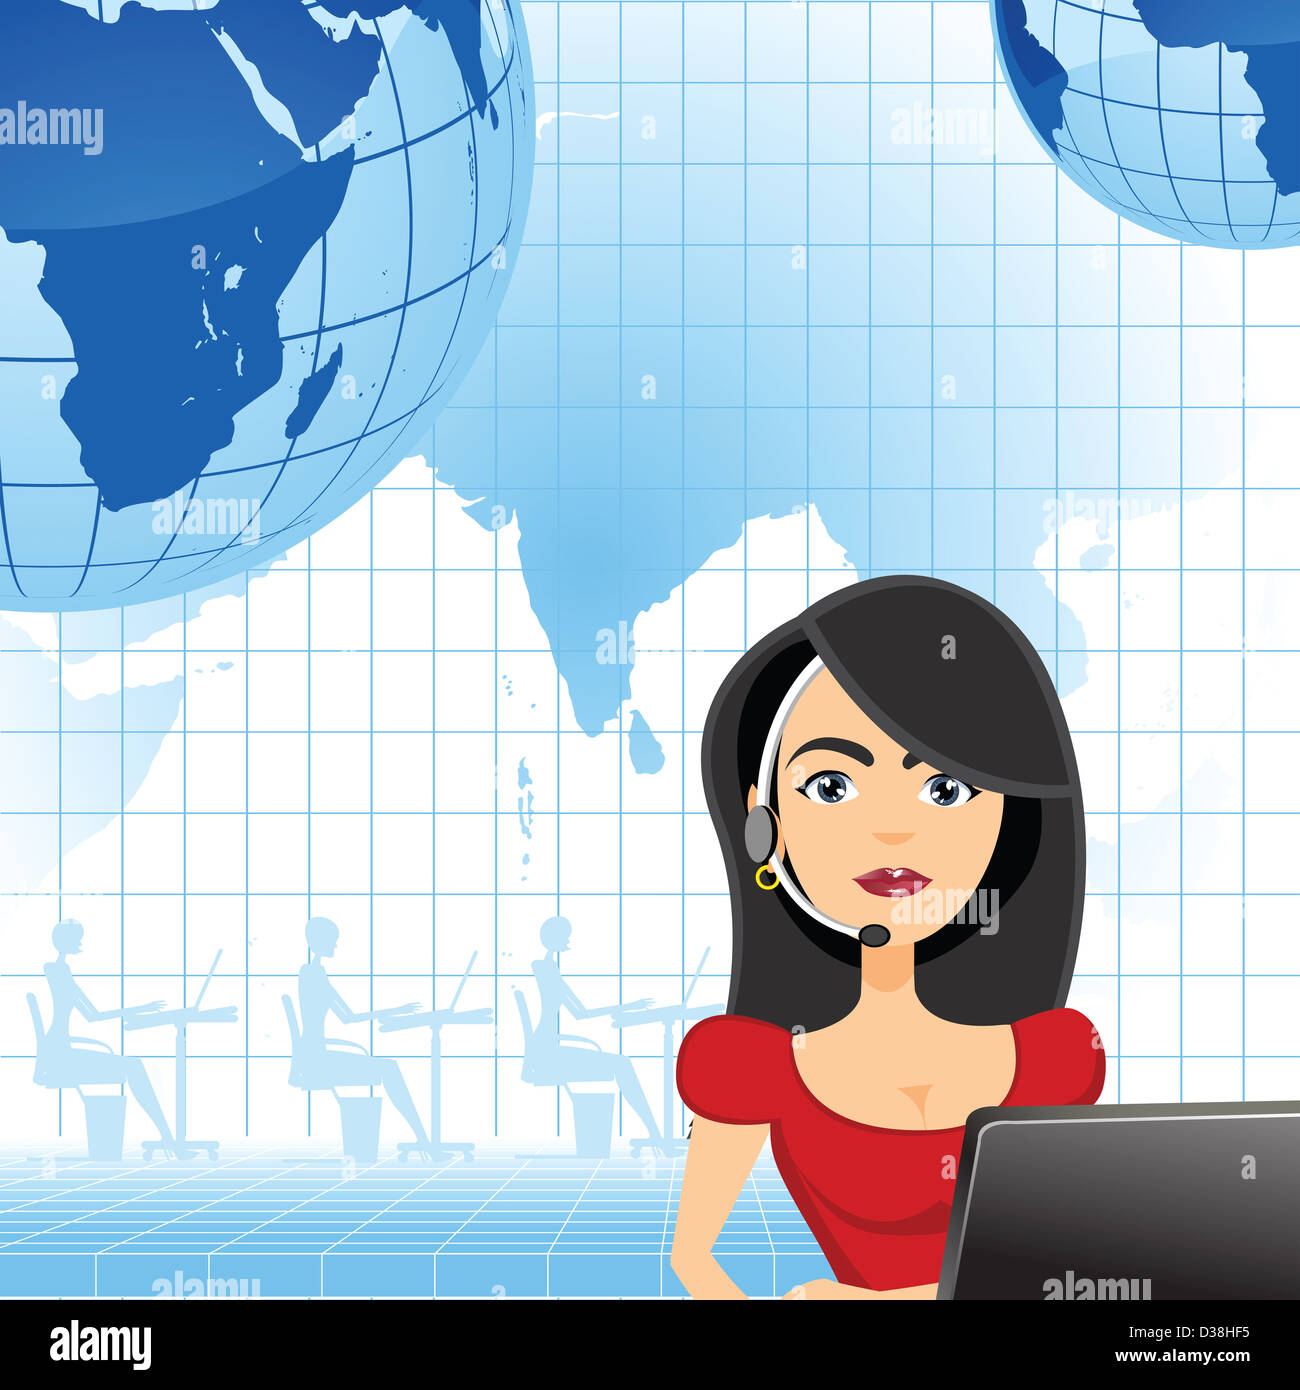 Weibliche Mitarbeiter des Kundendienstes mit Indien in der Karte hervorgehoben Stockfoto